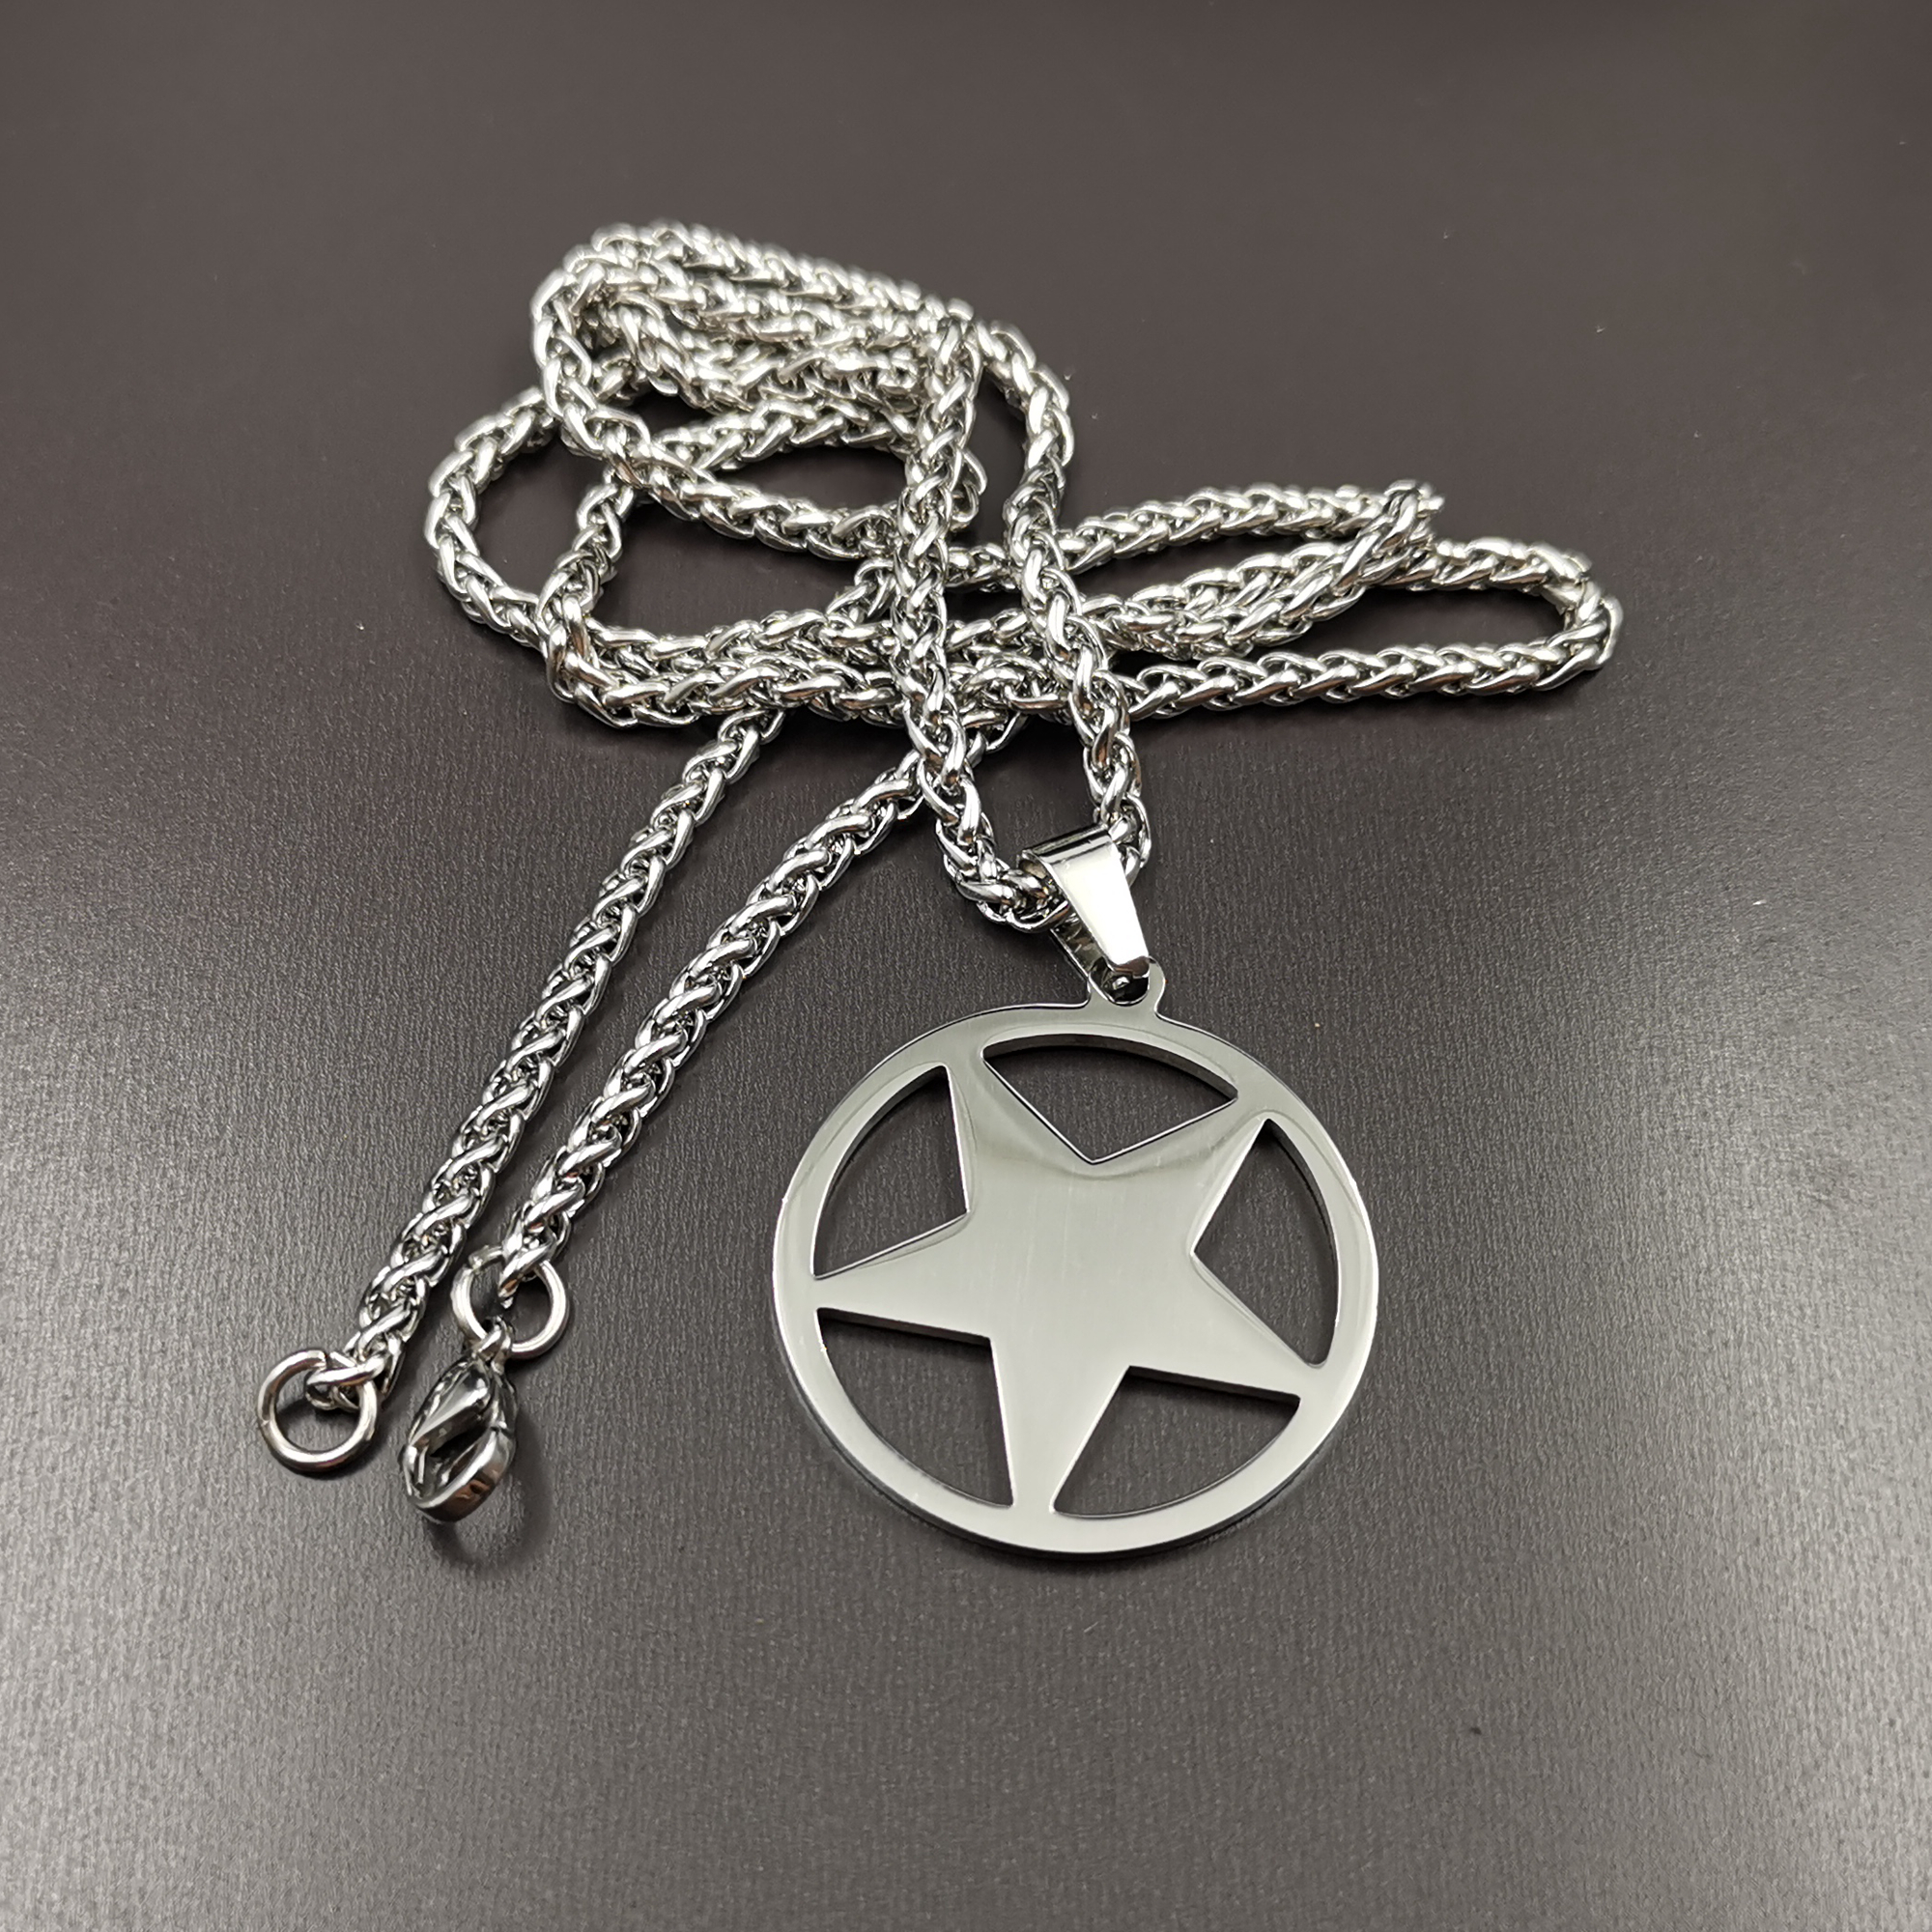 Acier inoxydable juif à l'envers pentagramme satanique culte pendentif collier NK chaîne pour hommes femmes 24 pouces argent